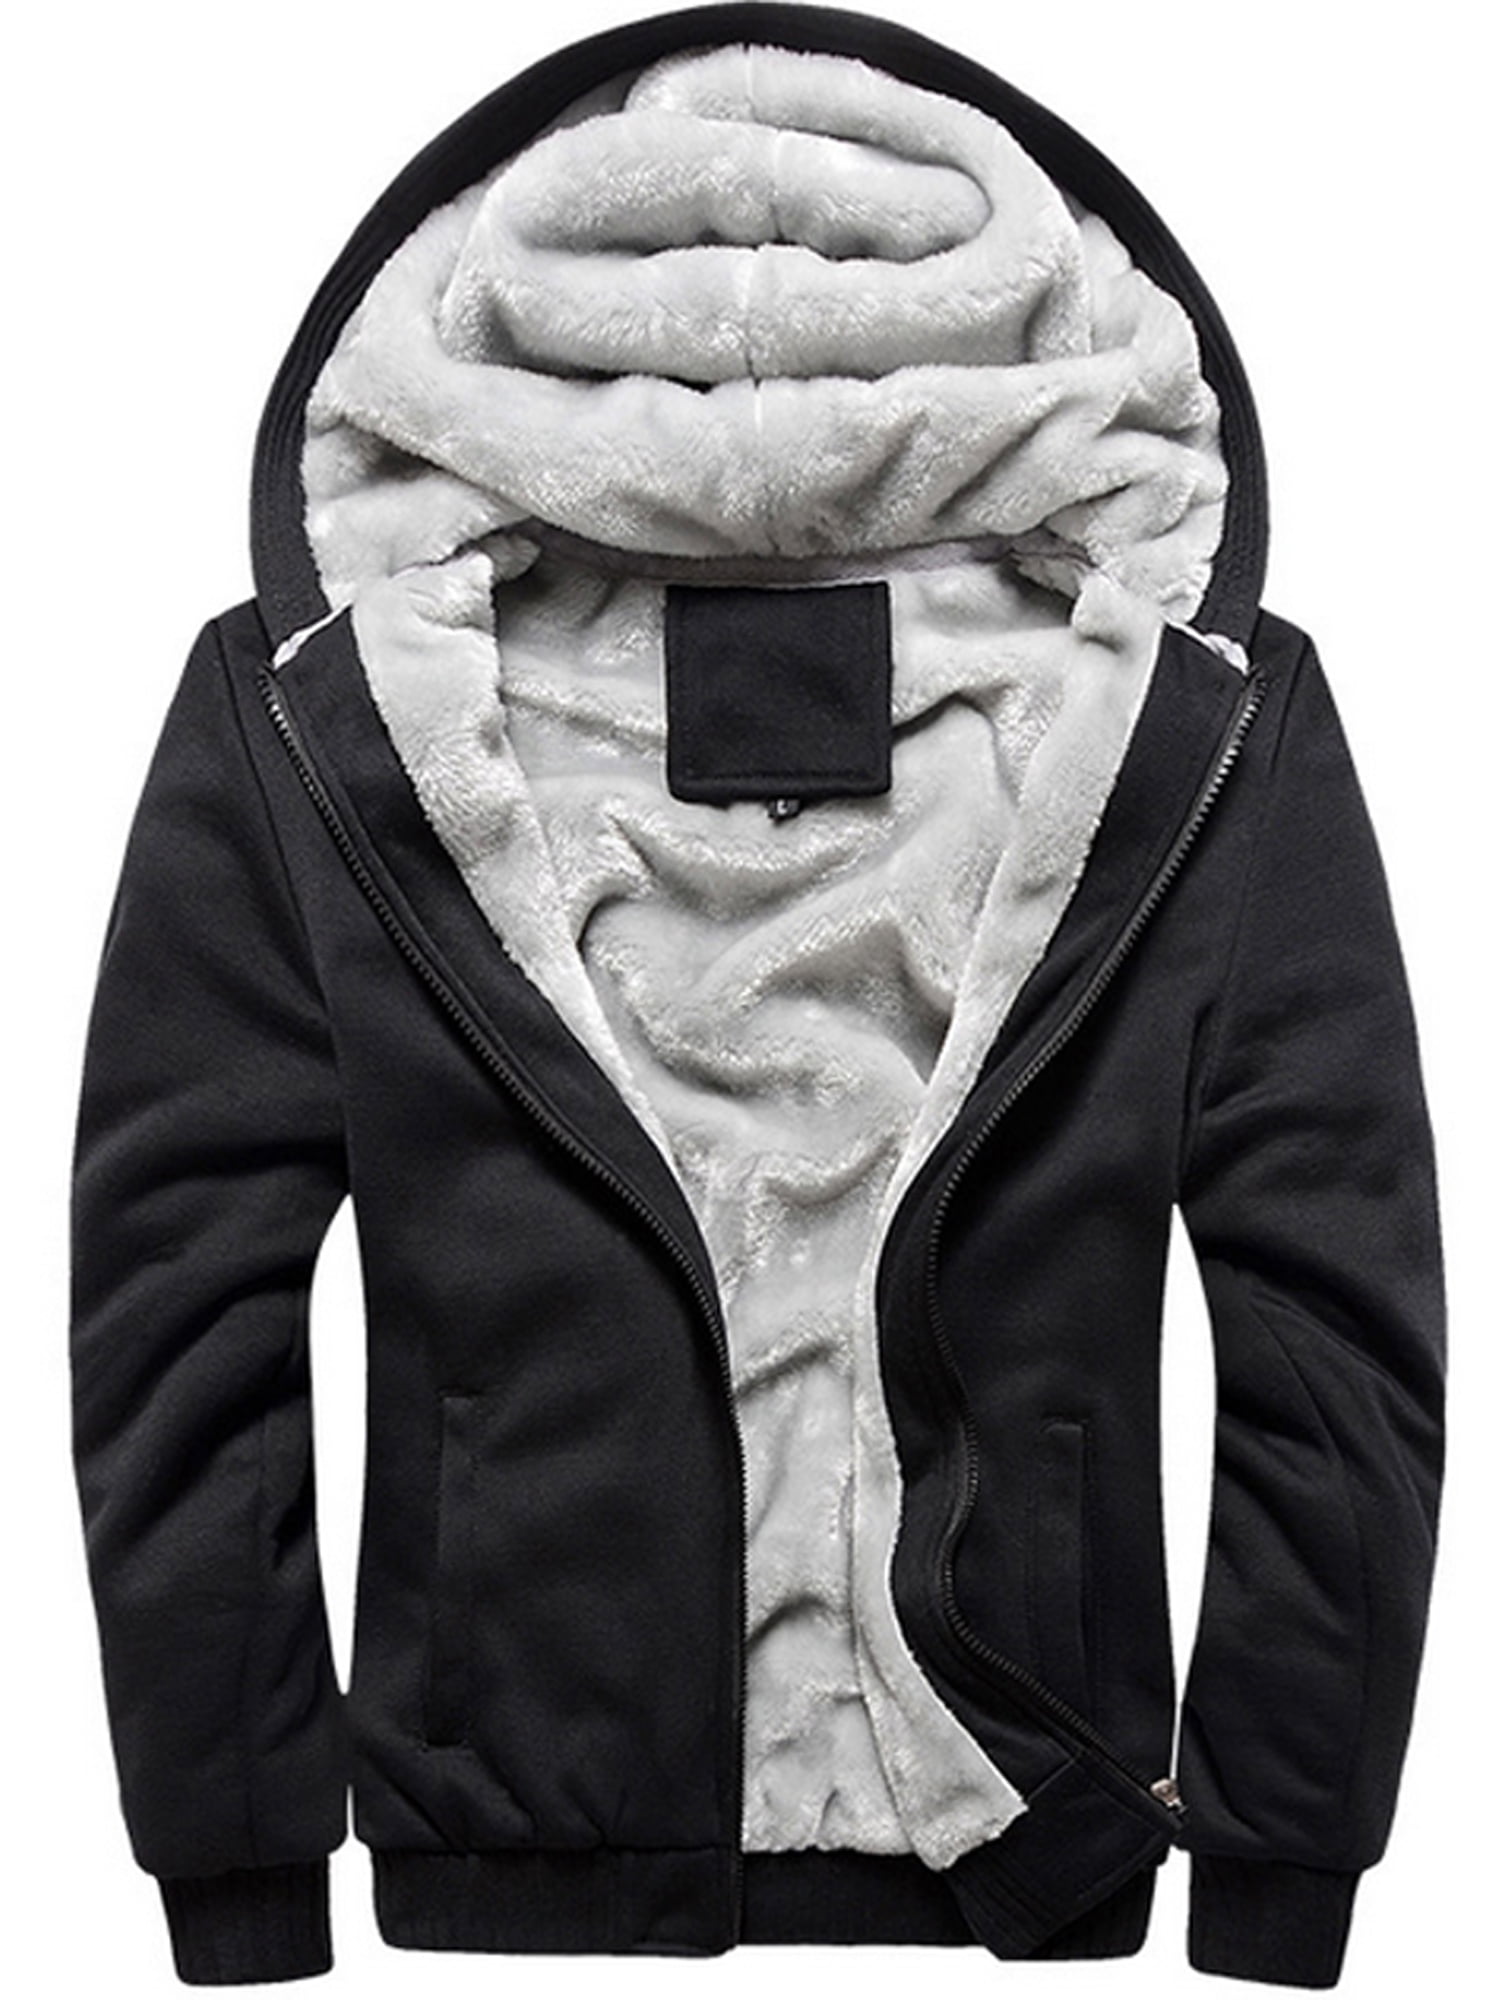 Men's Thick Warm Fleece Lined Hooded Hoodie Winter Zip Up Coat Jacket Sweatshirt